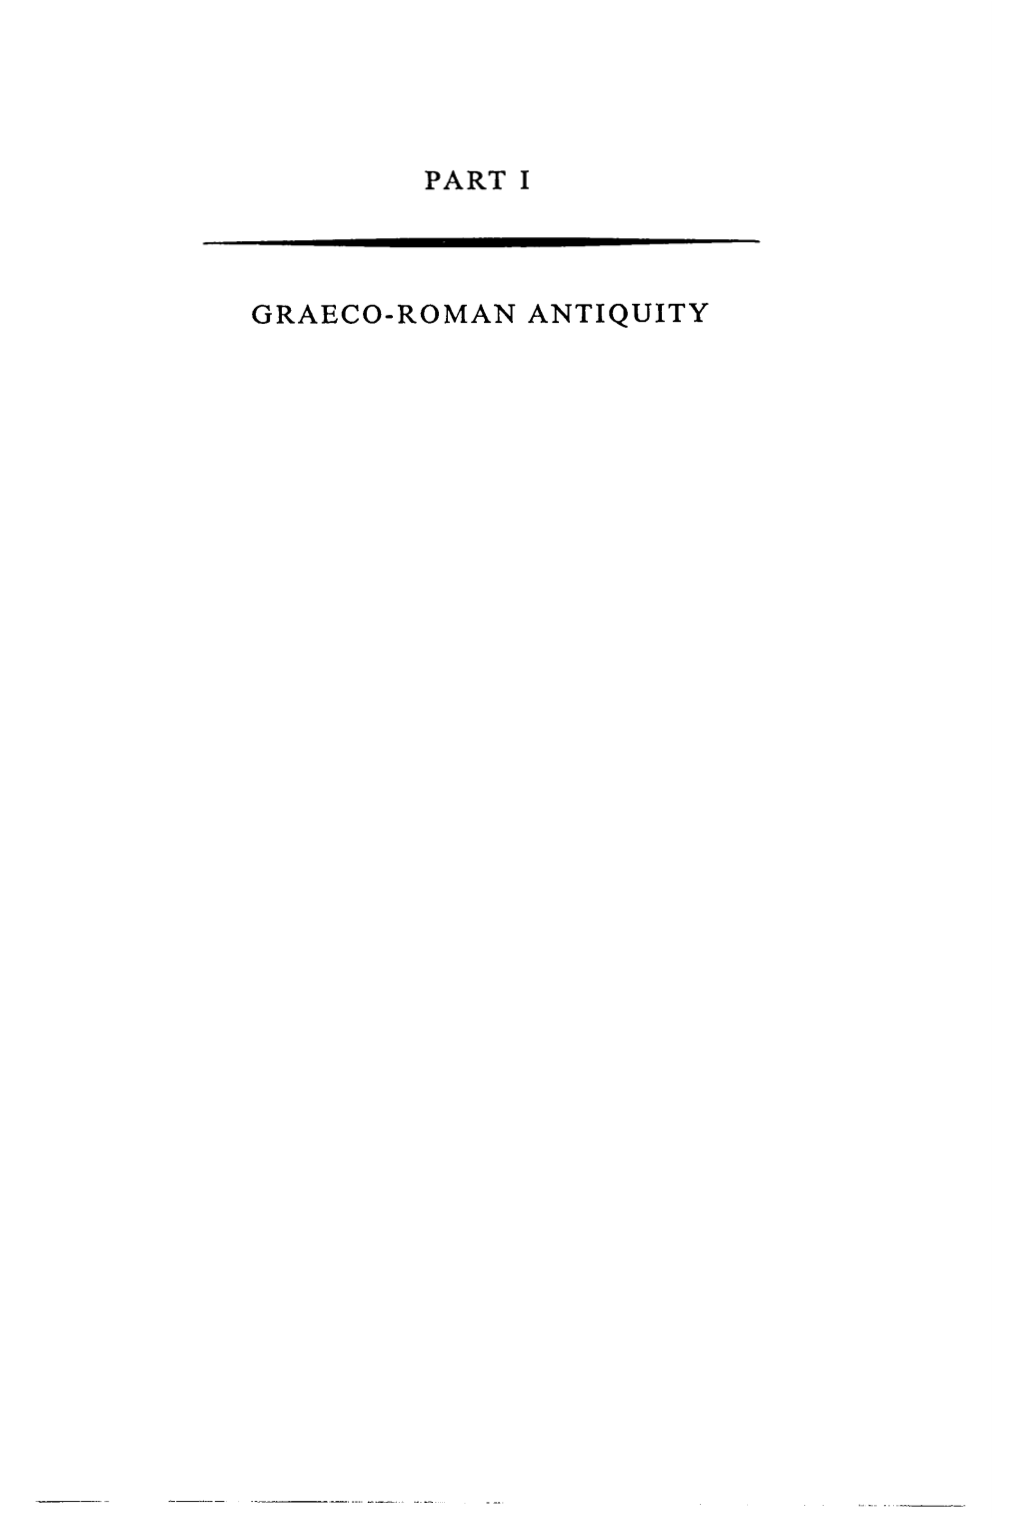 Graeco - Roman Antiquity